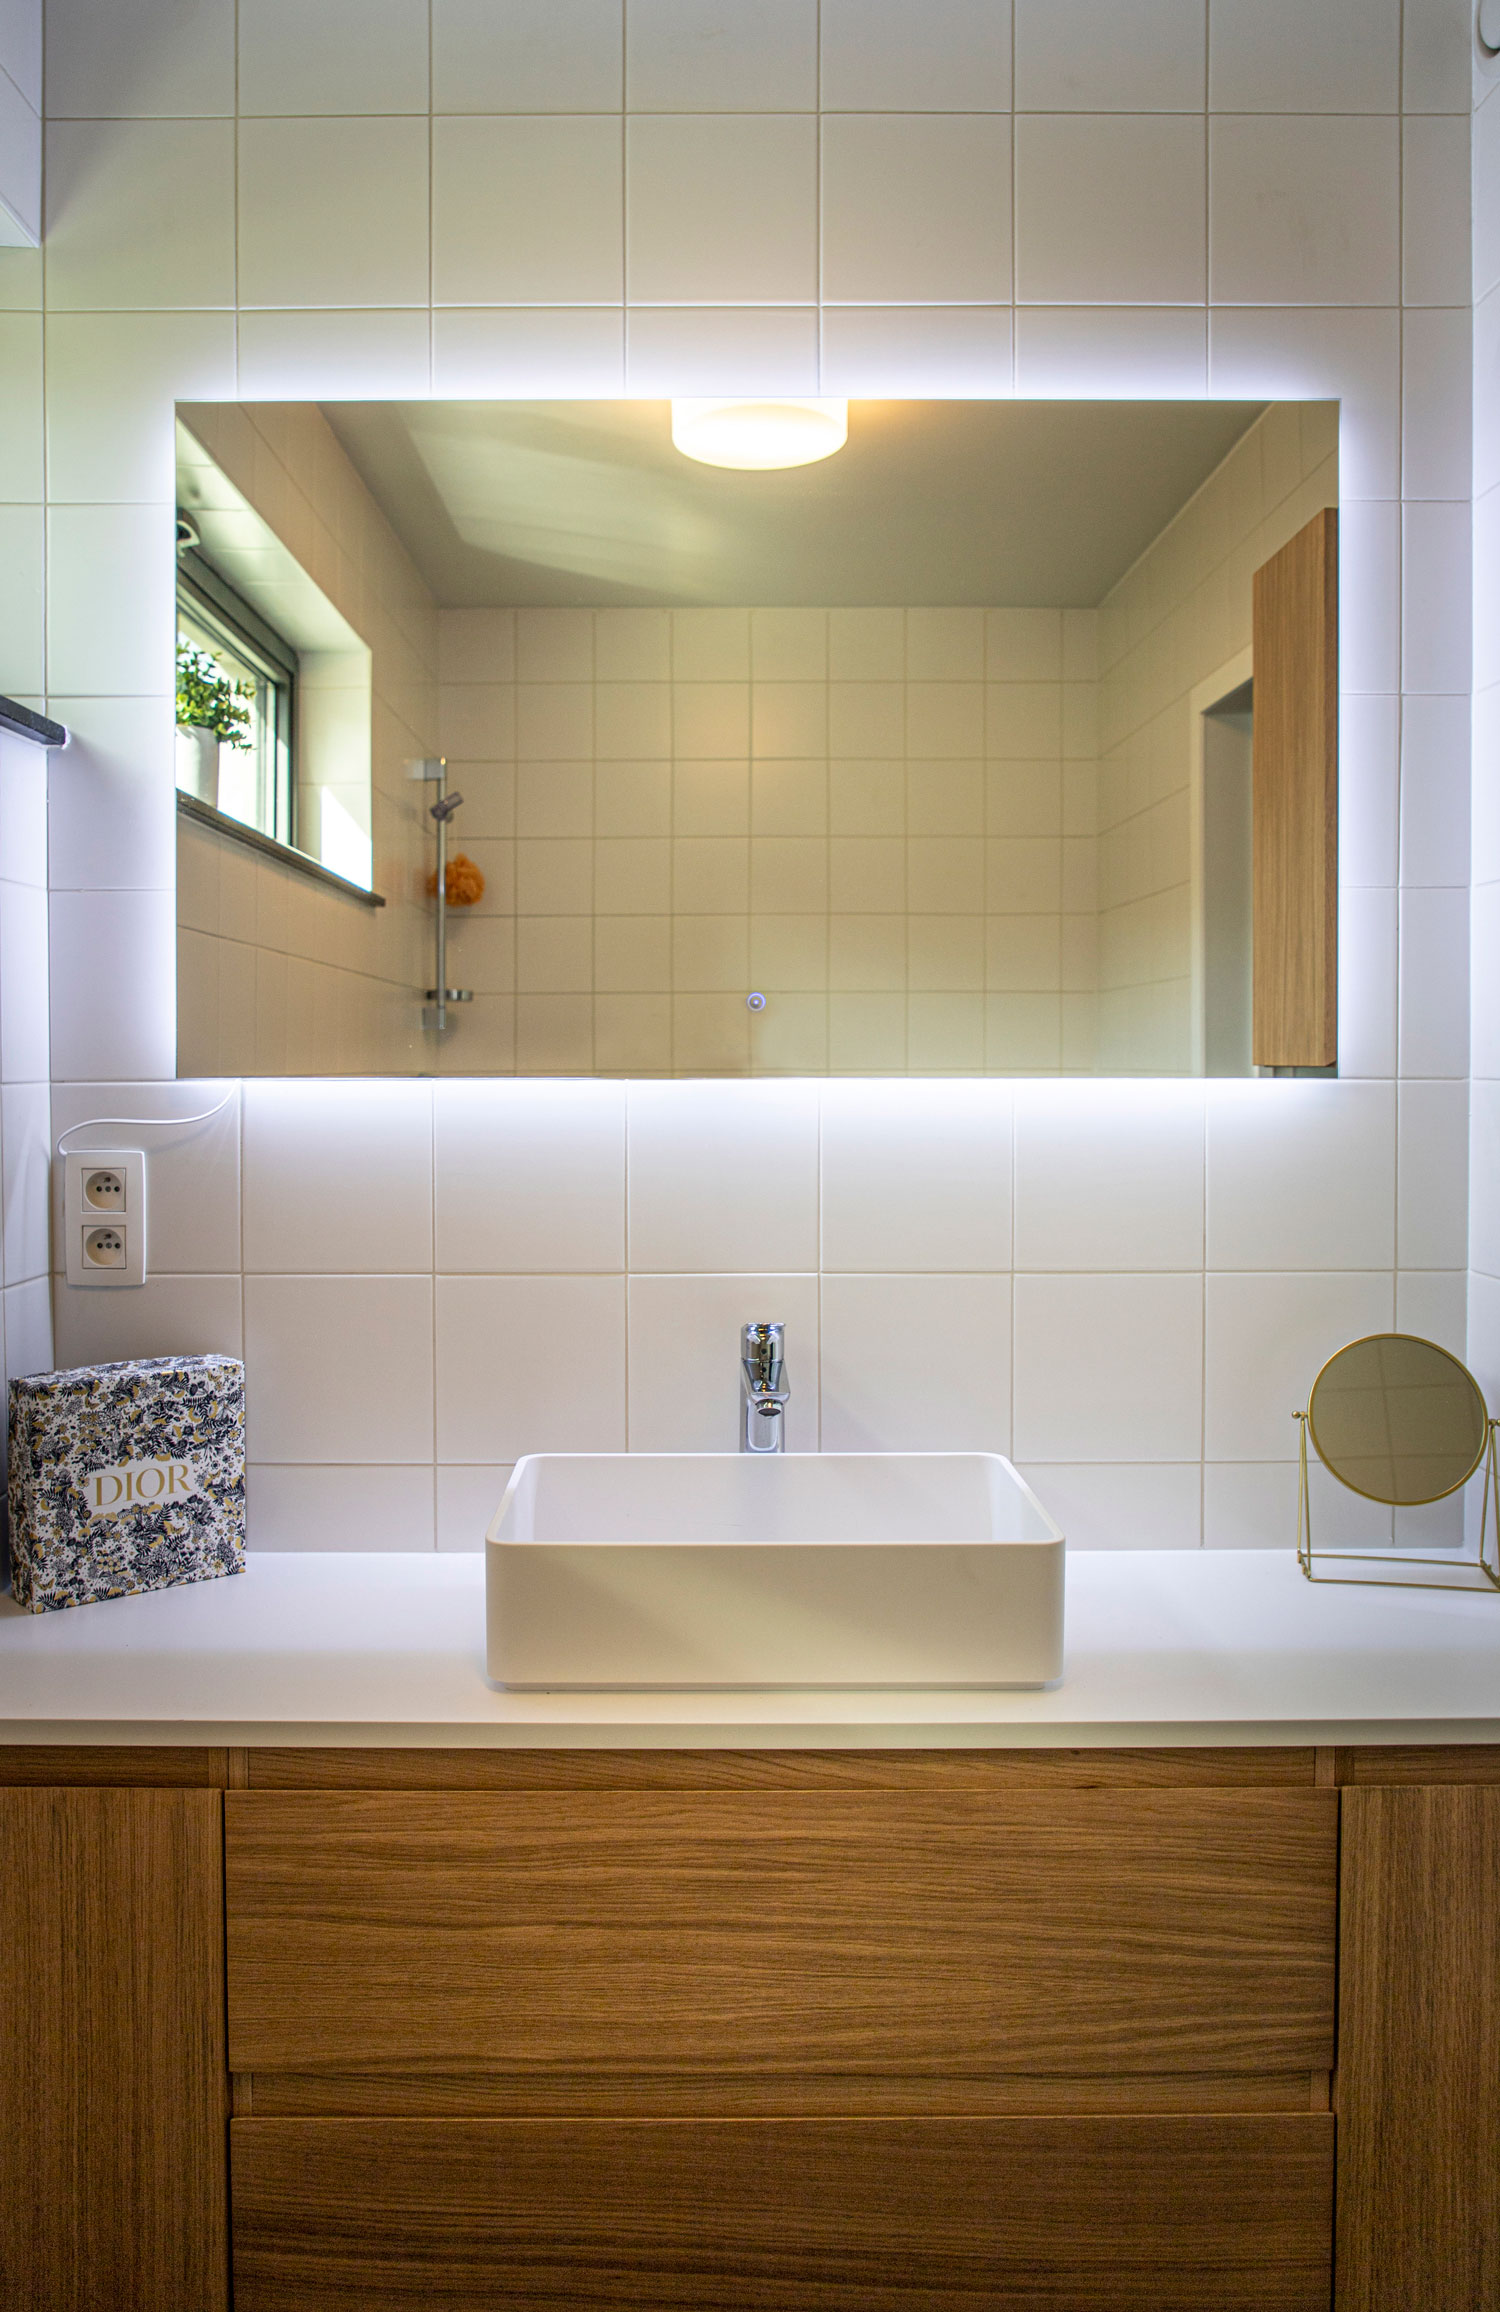 Muebles con cajones: incrementa el poder de almacenaje de tu baño